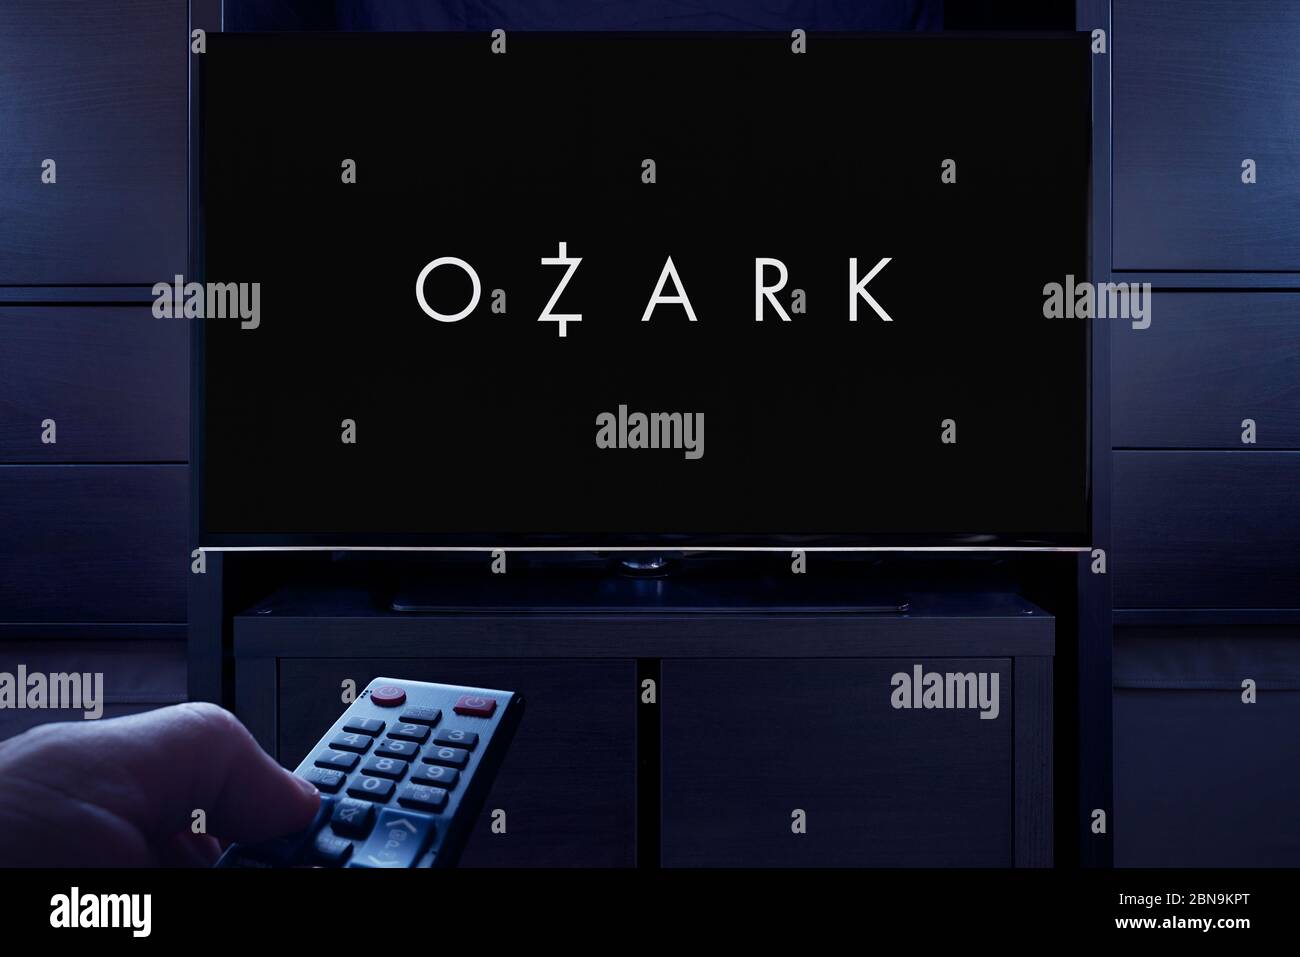 Un homme pointe une télécommande vers le téléviseur qui affiche l'écran principal Ozark (usage éditorial uniquement). Banque D'Images